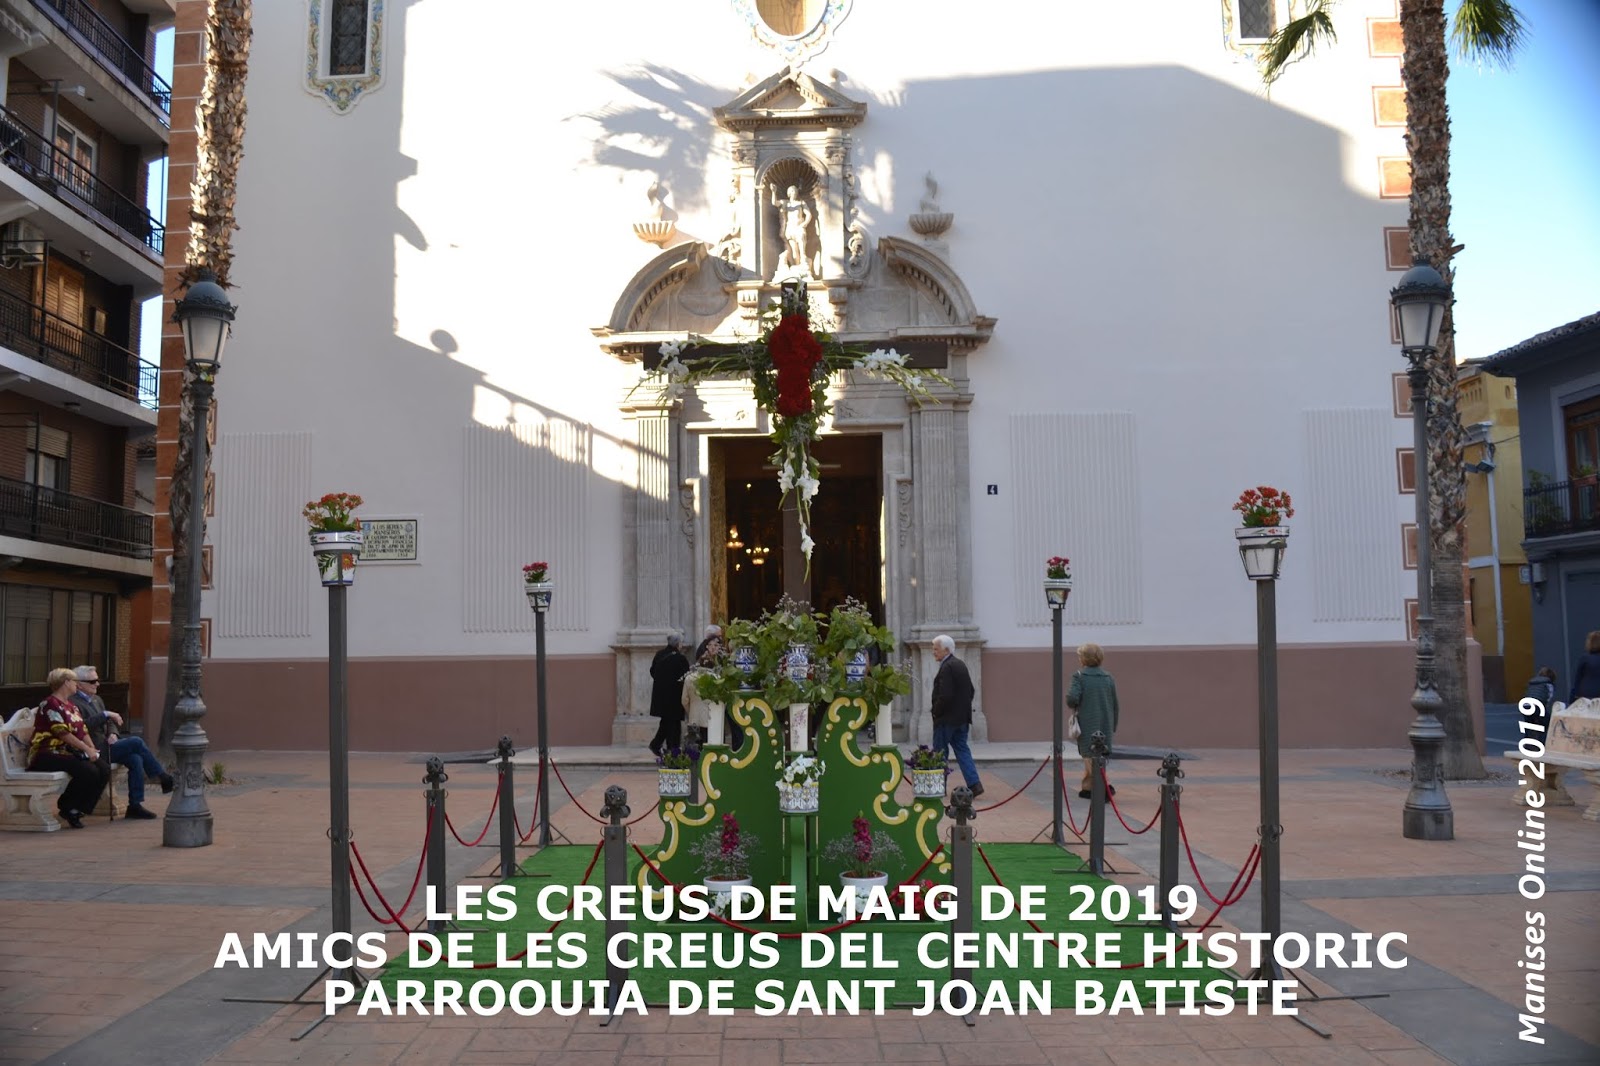 FESTA DE LES CREUS DE MAIG. RECORT DE L'ANY 2019, AMICS DE LES CREUS, PARROQUIA DE SANT JOAN BATIST